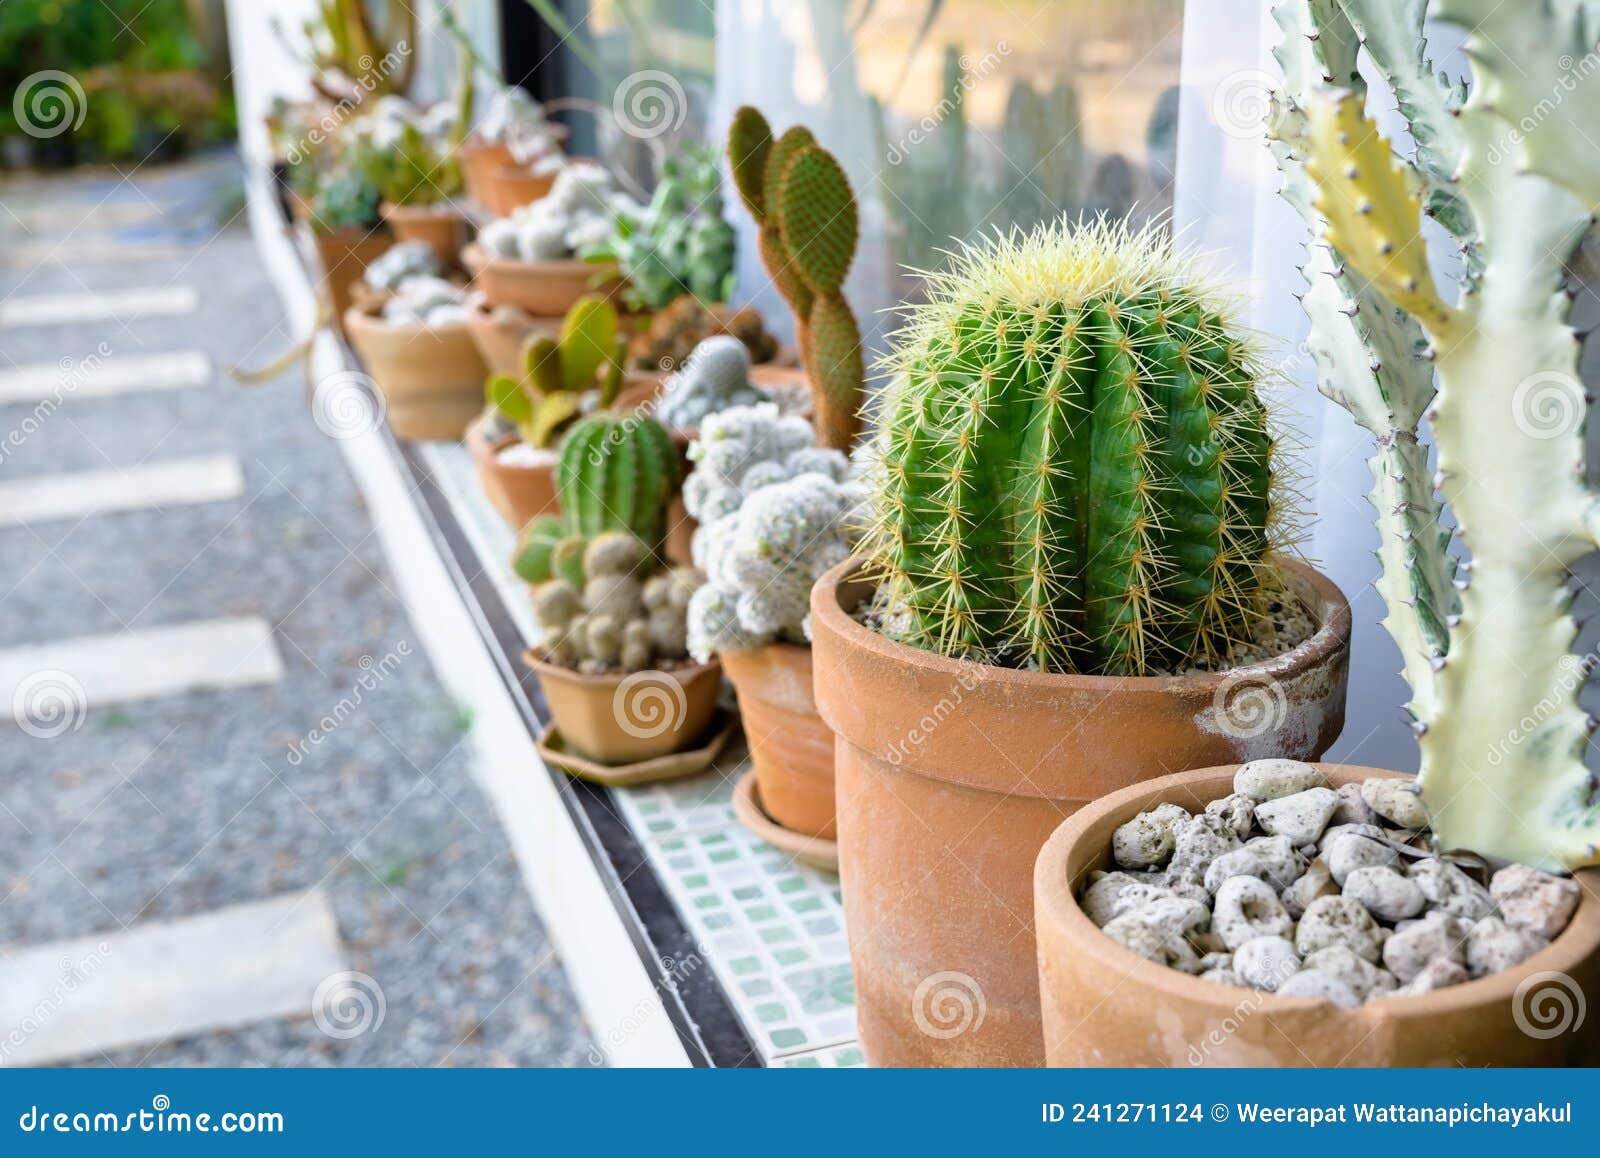 Cactus Dans Le Jardin Jardinage à La Maison Photo stock - Image du